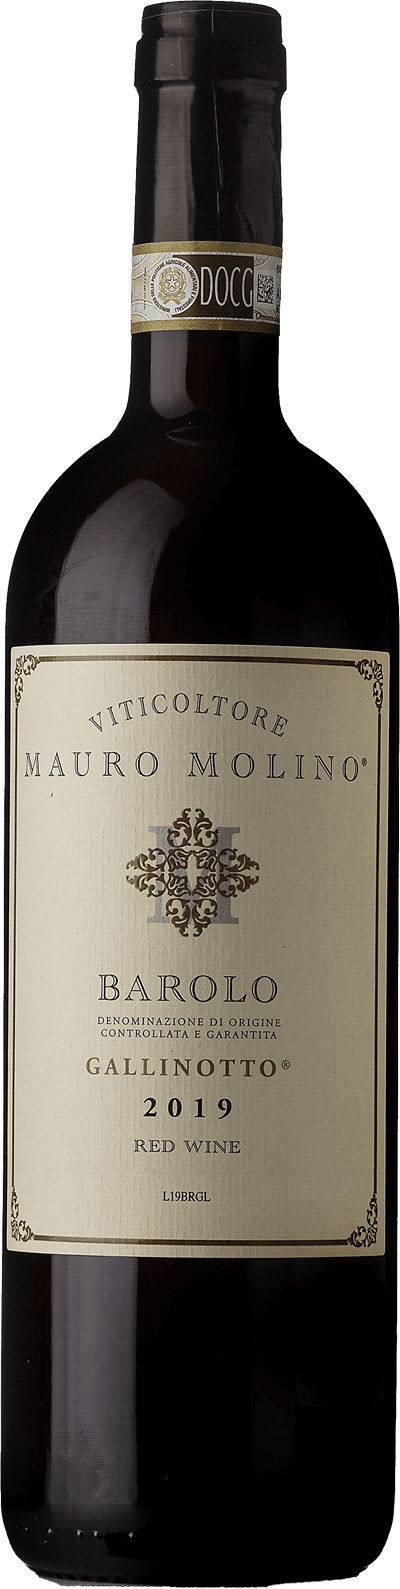 Barolo Gallinotto Mauro Molino